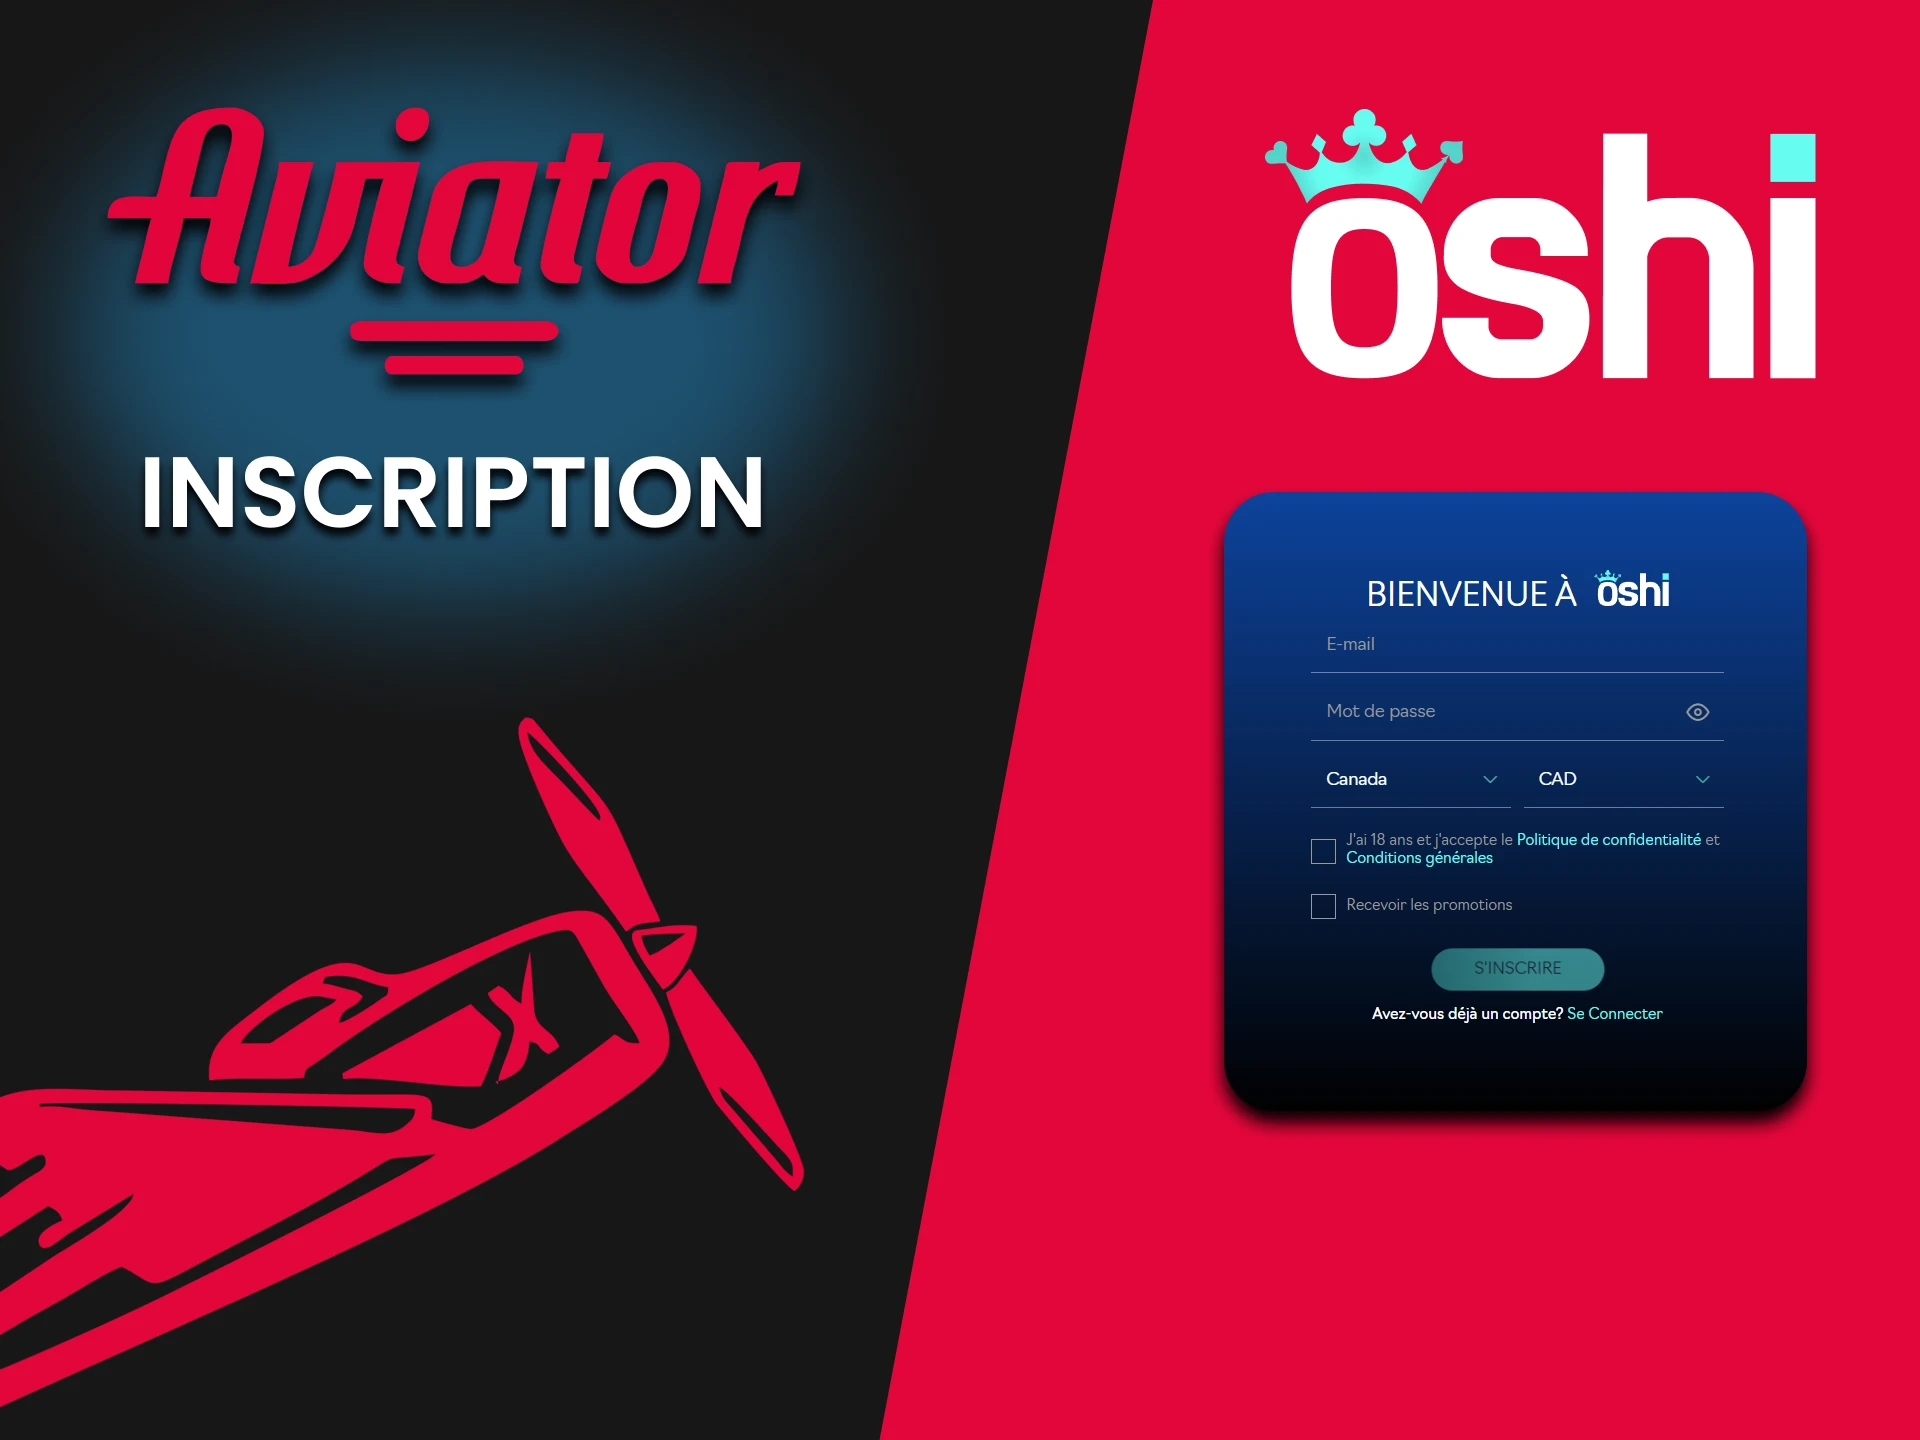 Pour jouer à Aviator, vous devez vous inscrire sur Oshi Casino.